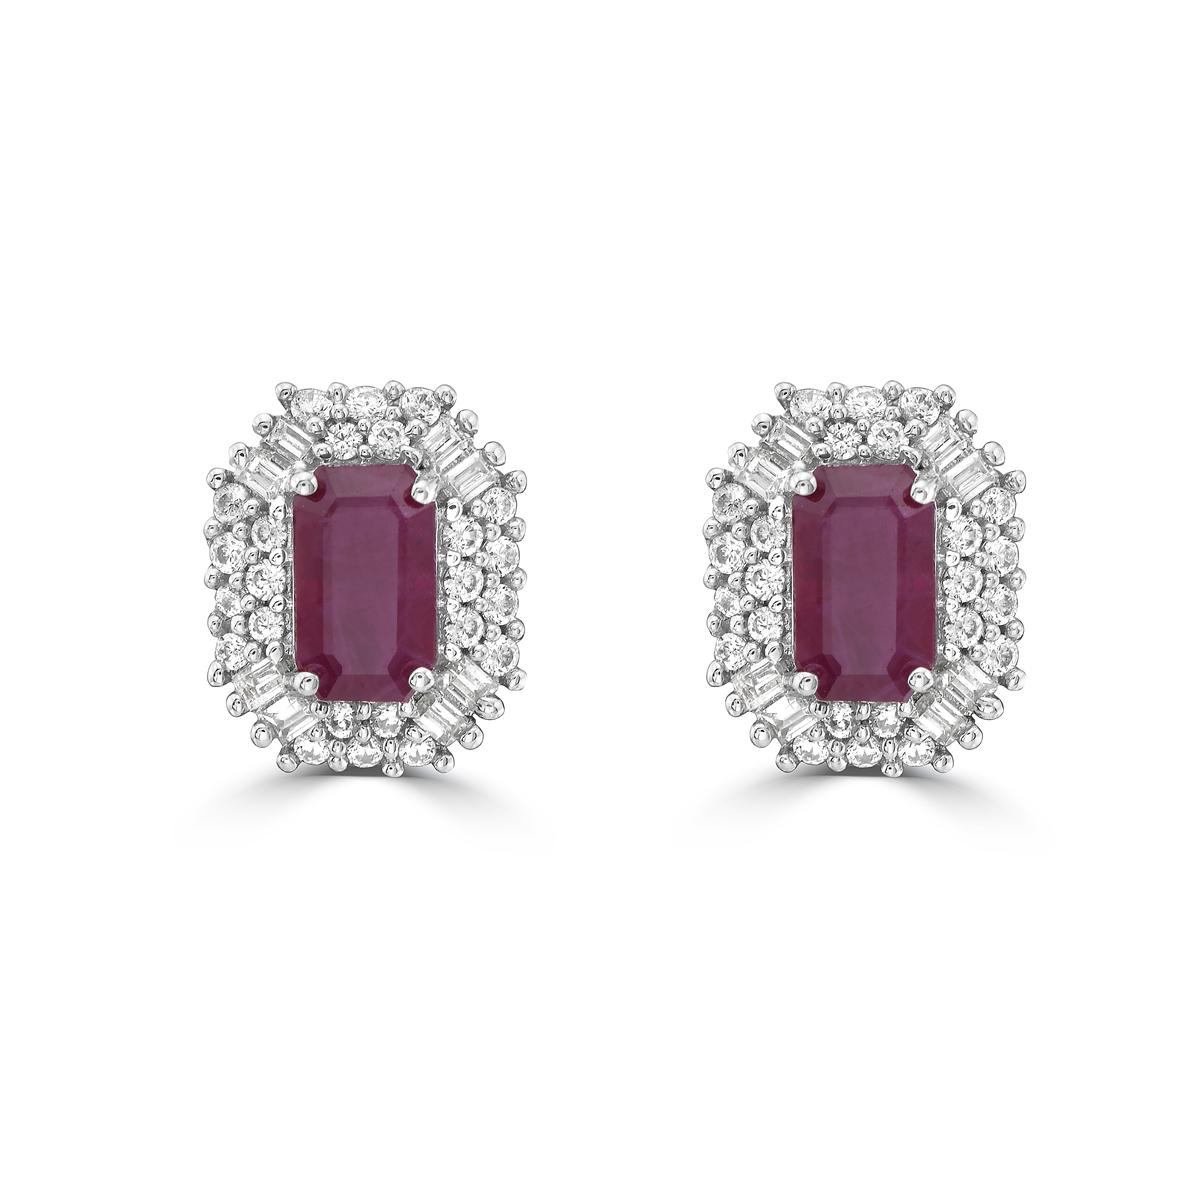 Gönnen Sie sich Luxus mit unseren Doppelhalo-Ohrsteckern mit Rubinen und Diamanten. Diese Rubin-Ohrstecker sind mit atemberaubenden Rubinen im Baguetteschliff besetzt und strahlen Raffinesse und Exklusivität aus. Das schillernde doppelte Halo-Design